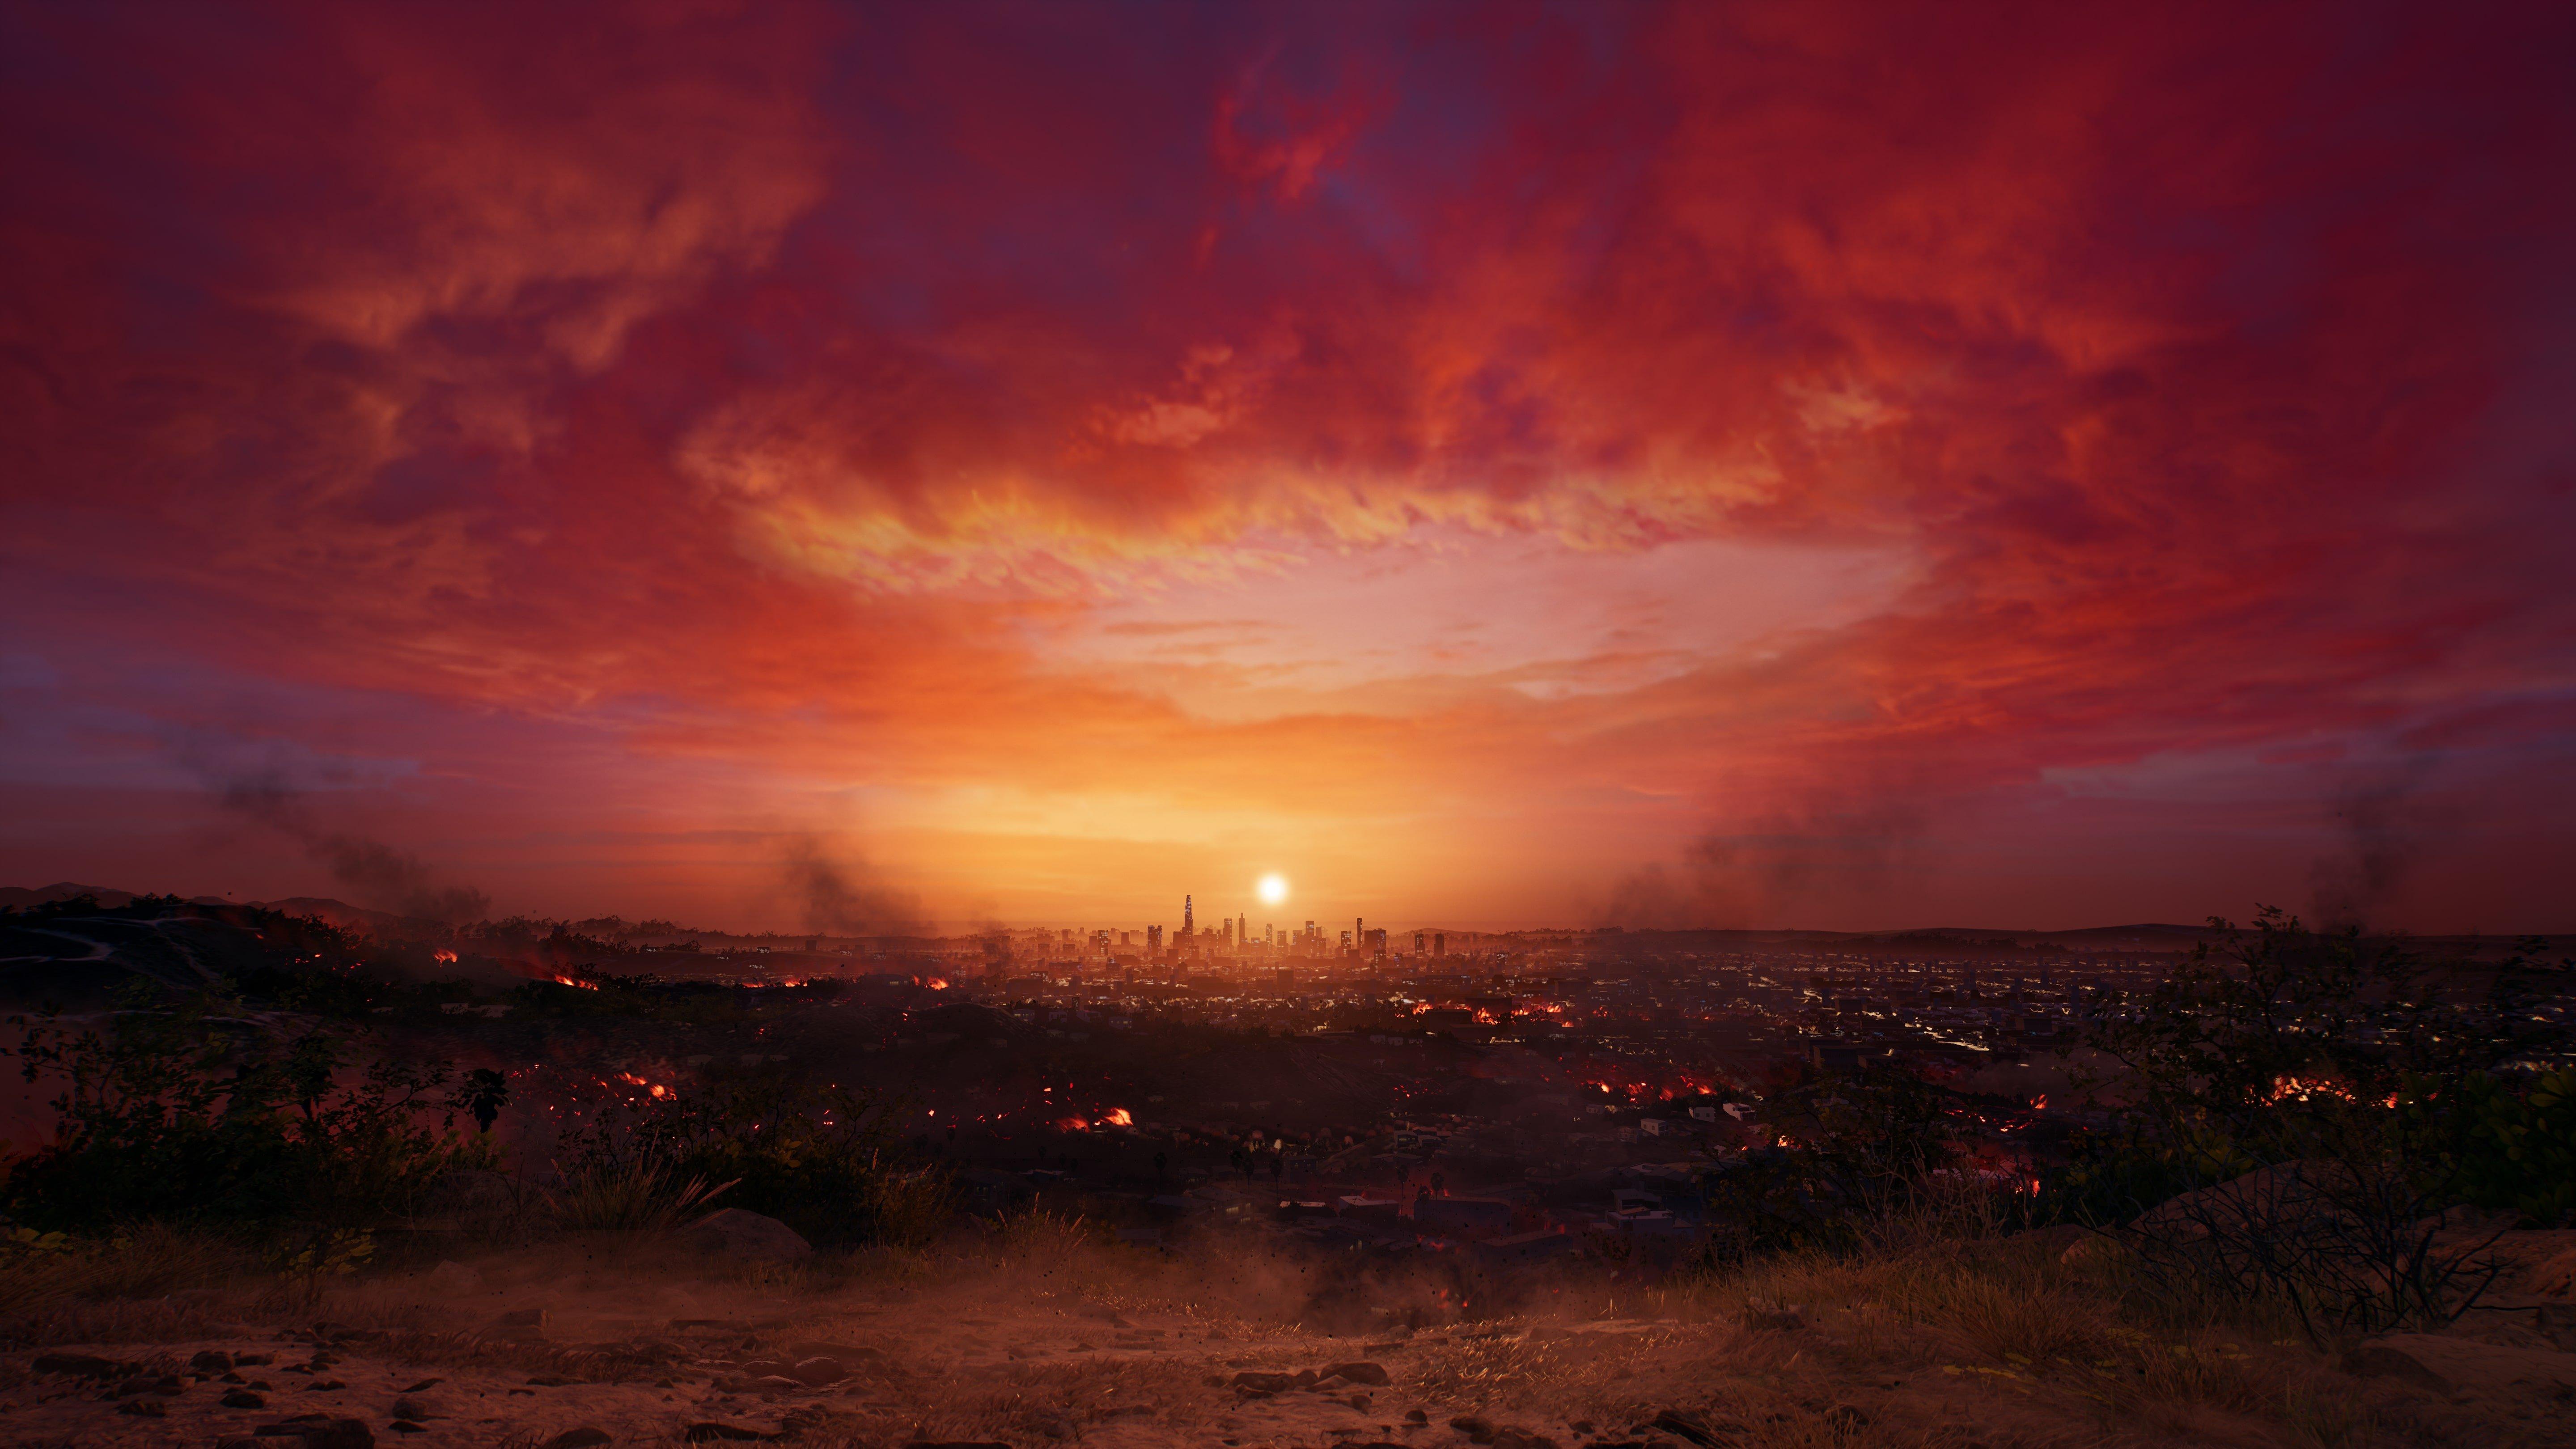 Dead Island 2 PS5 Digital Primario - Estación Play